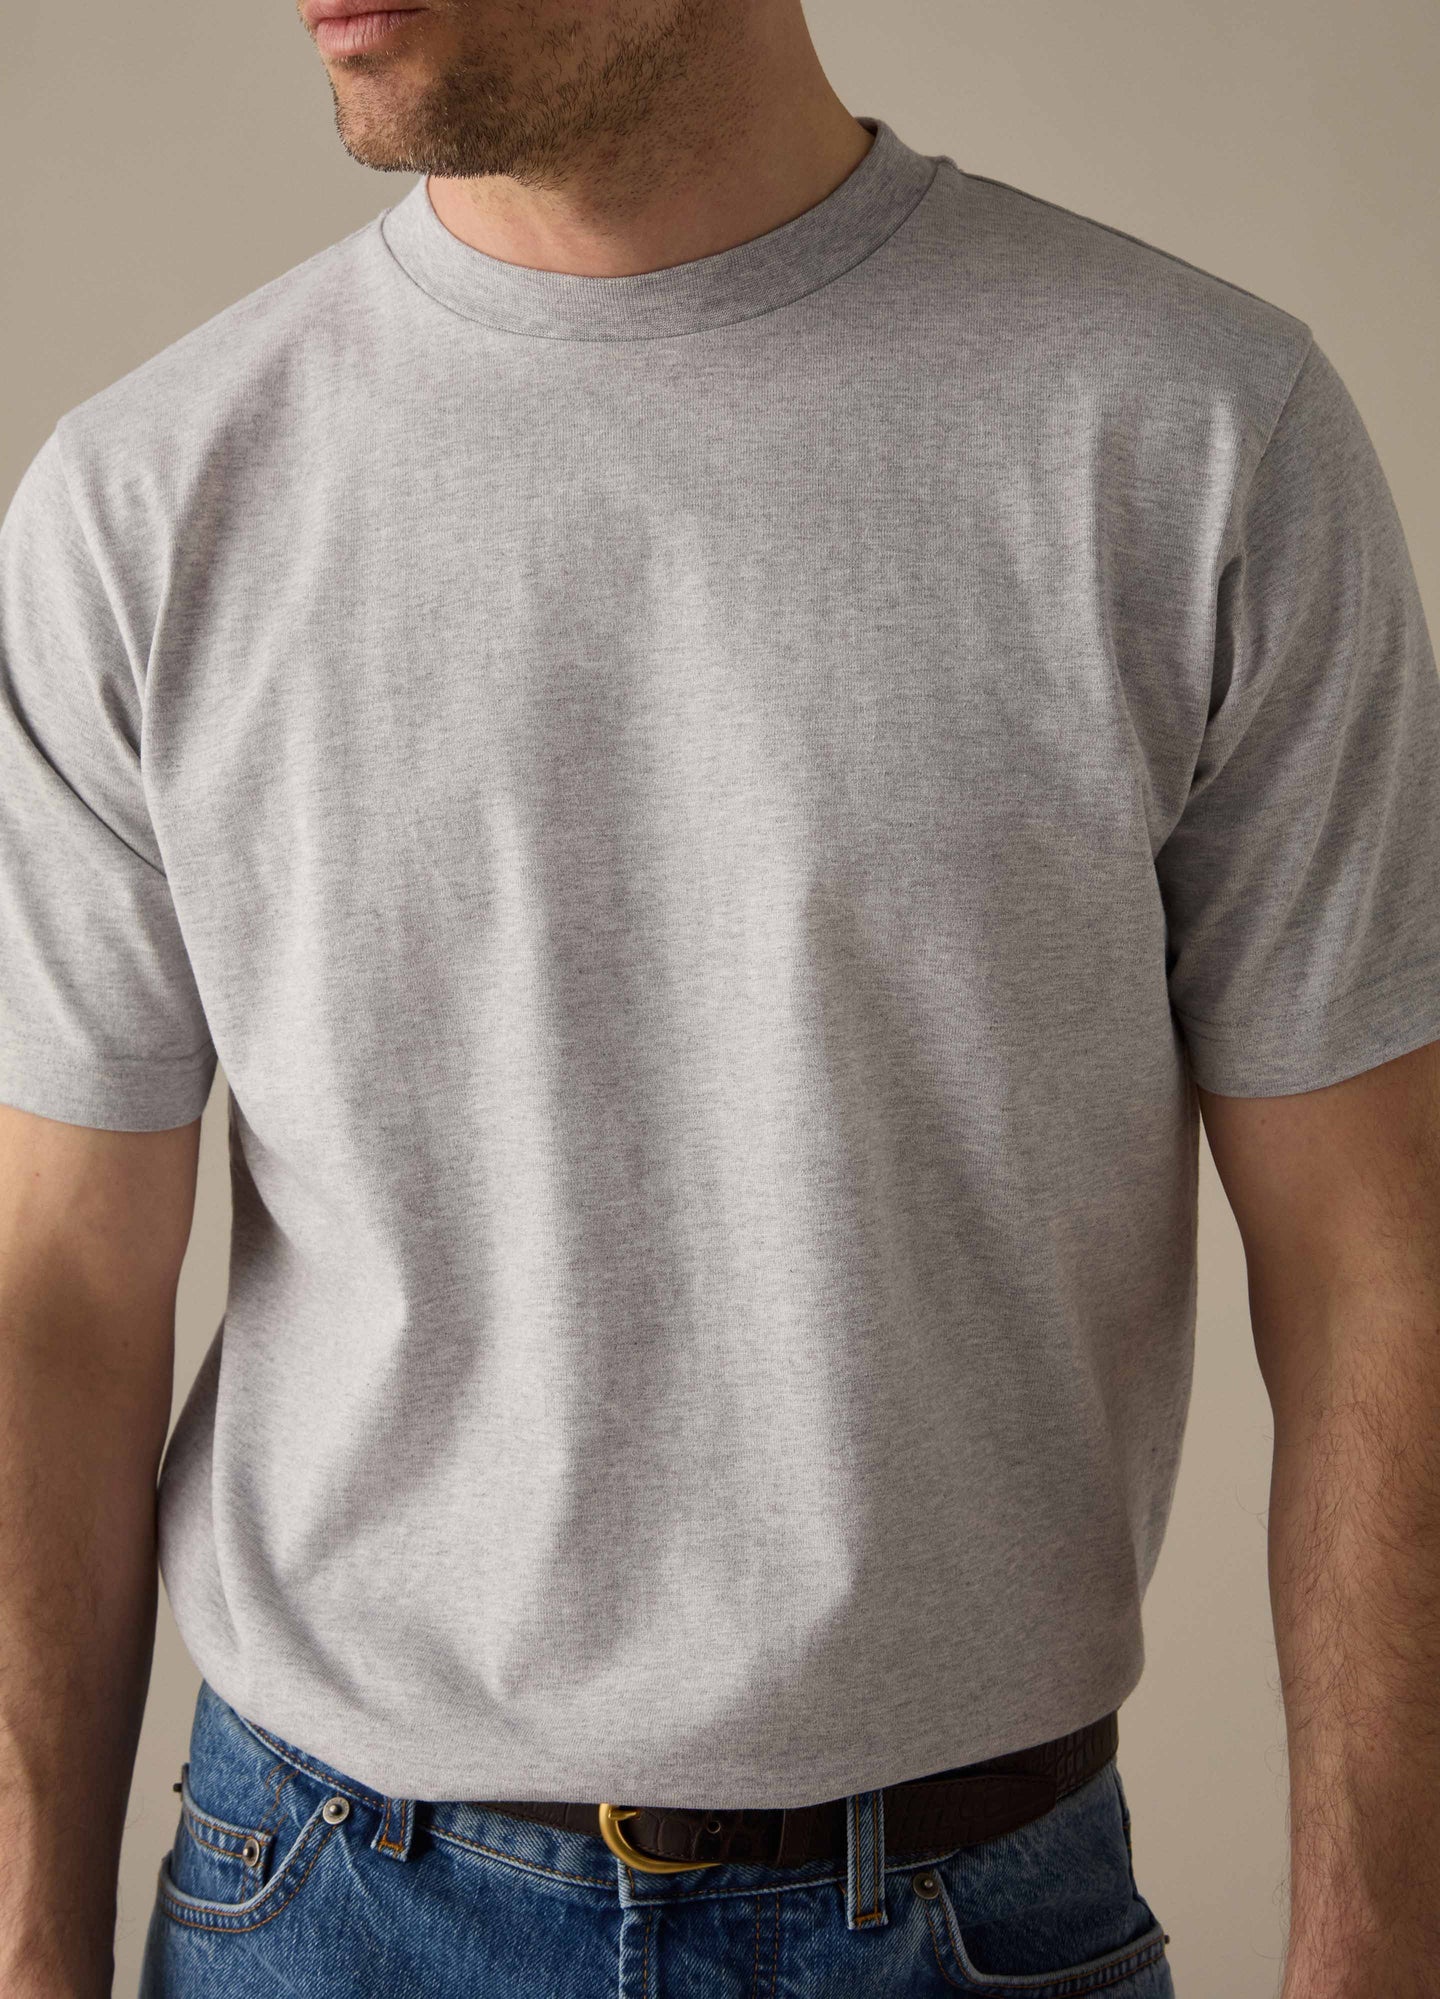 Tony T-Shirt - Grey Melange Berg & Berg